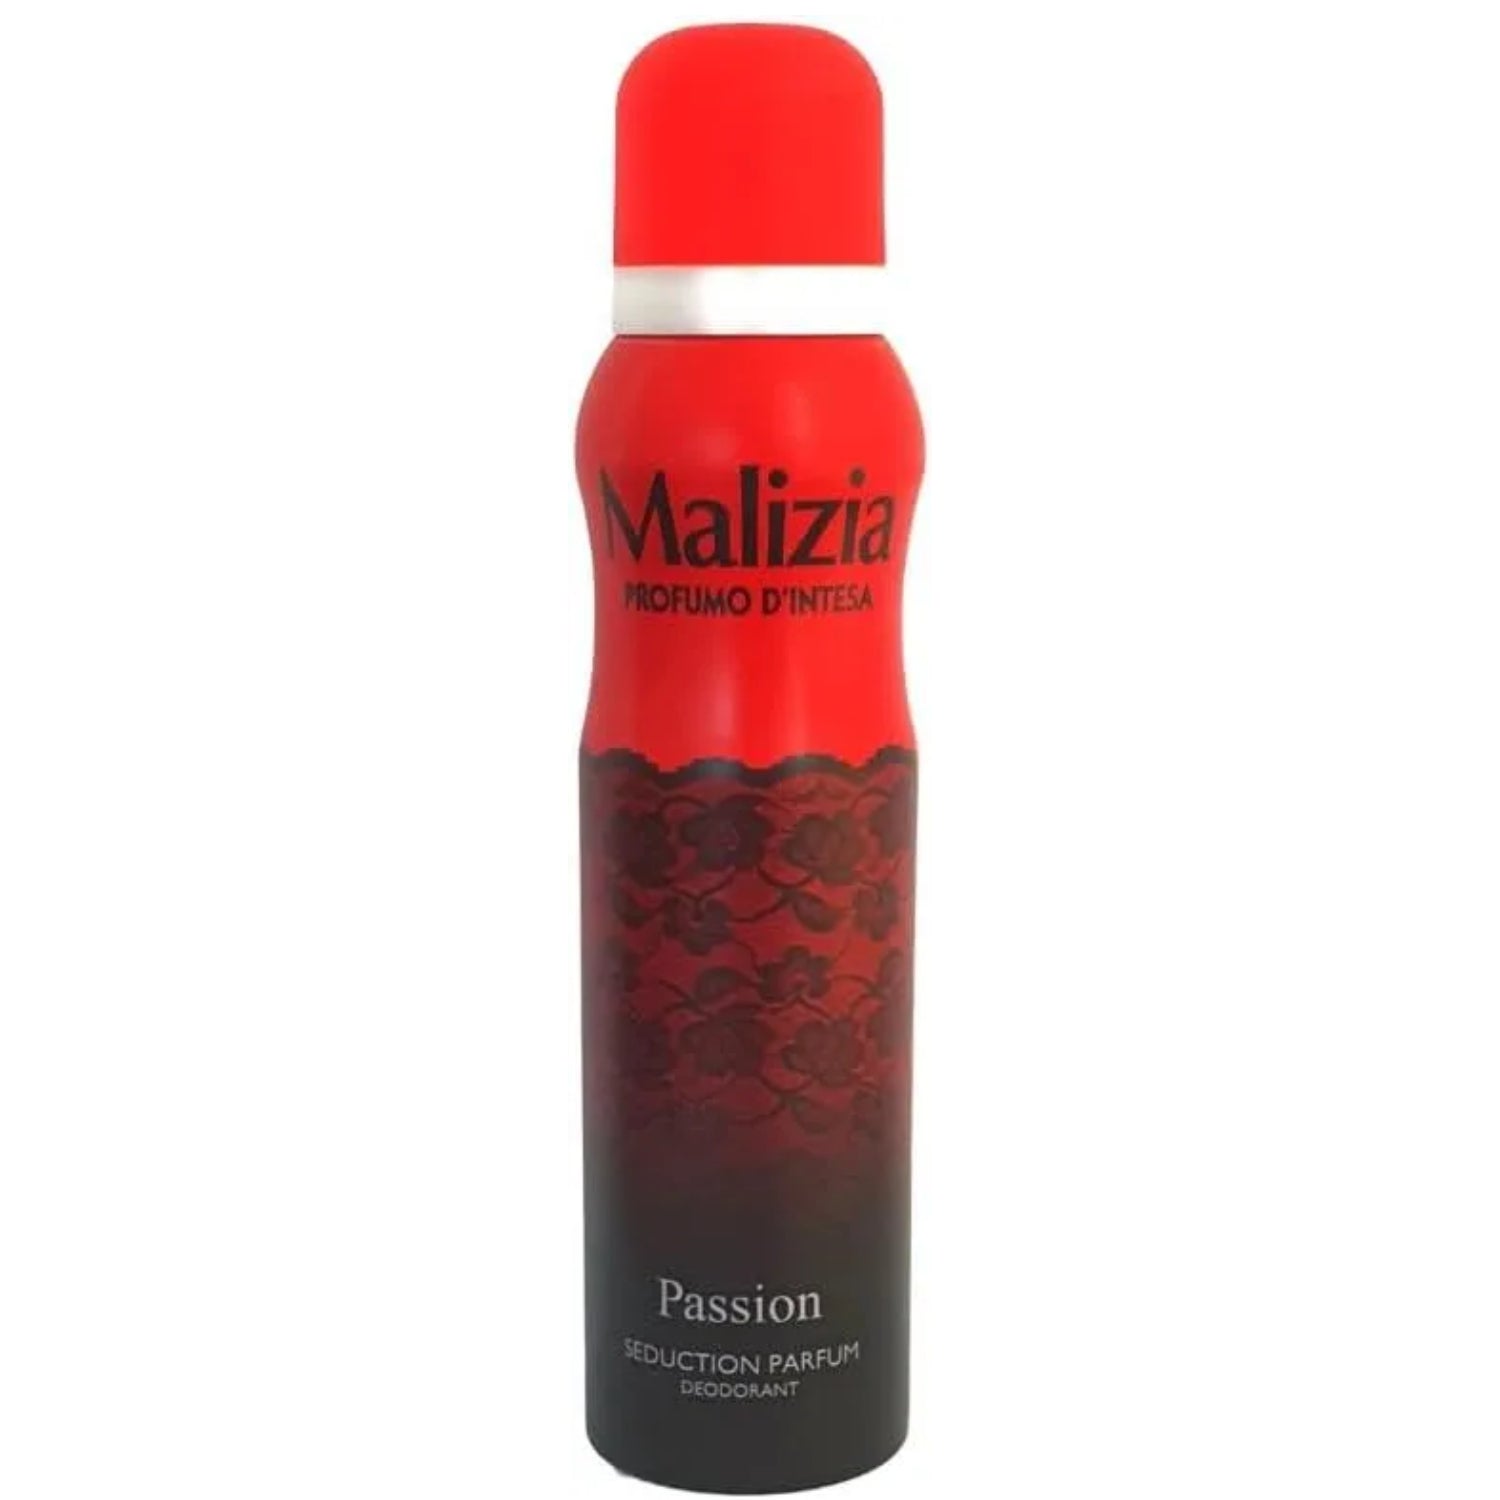 Malizia Seduction Parfum Passion 150ml